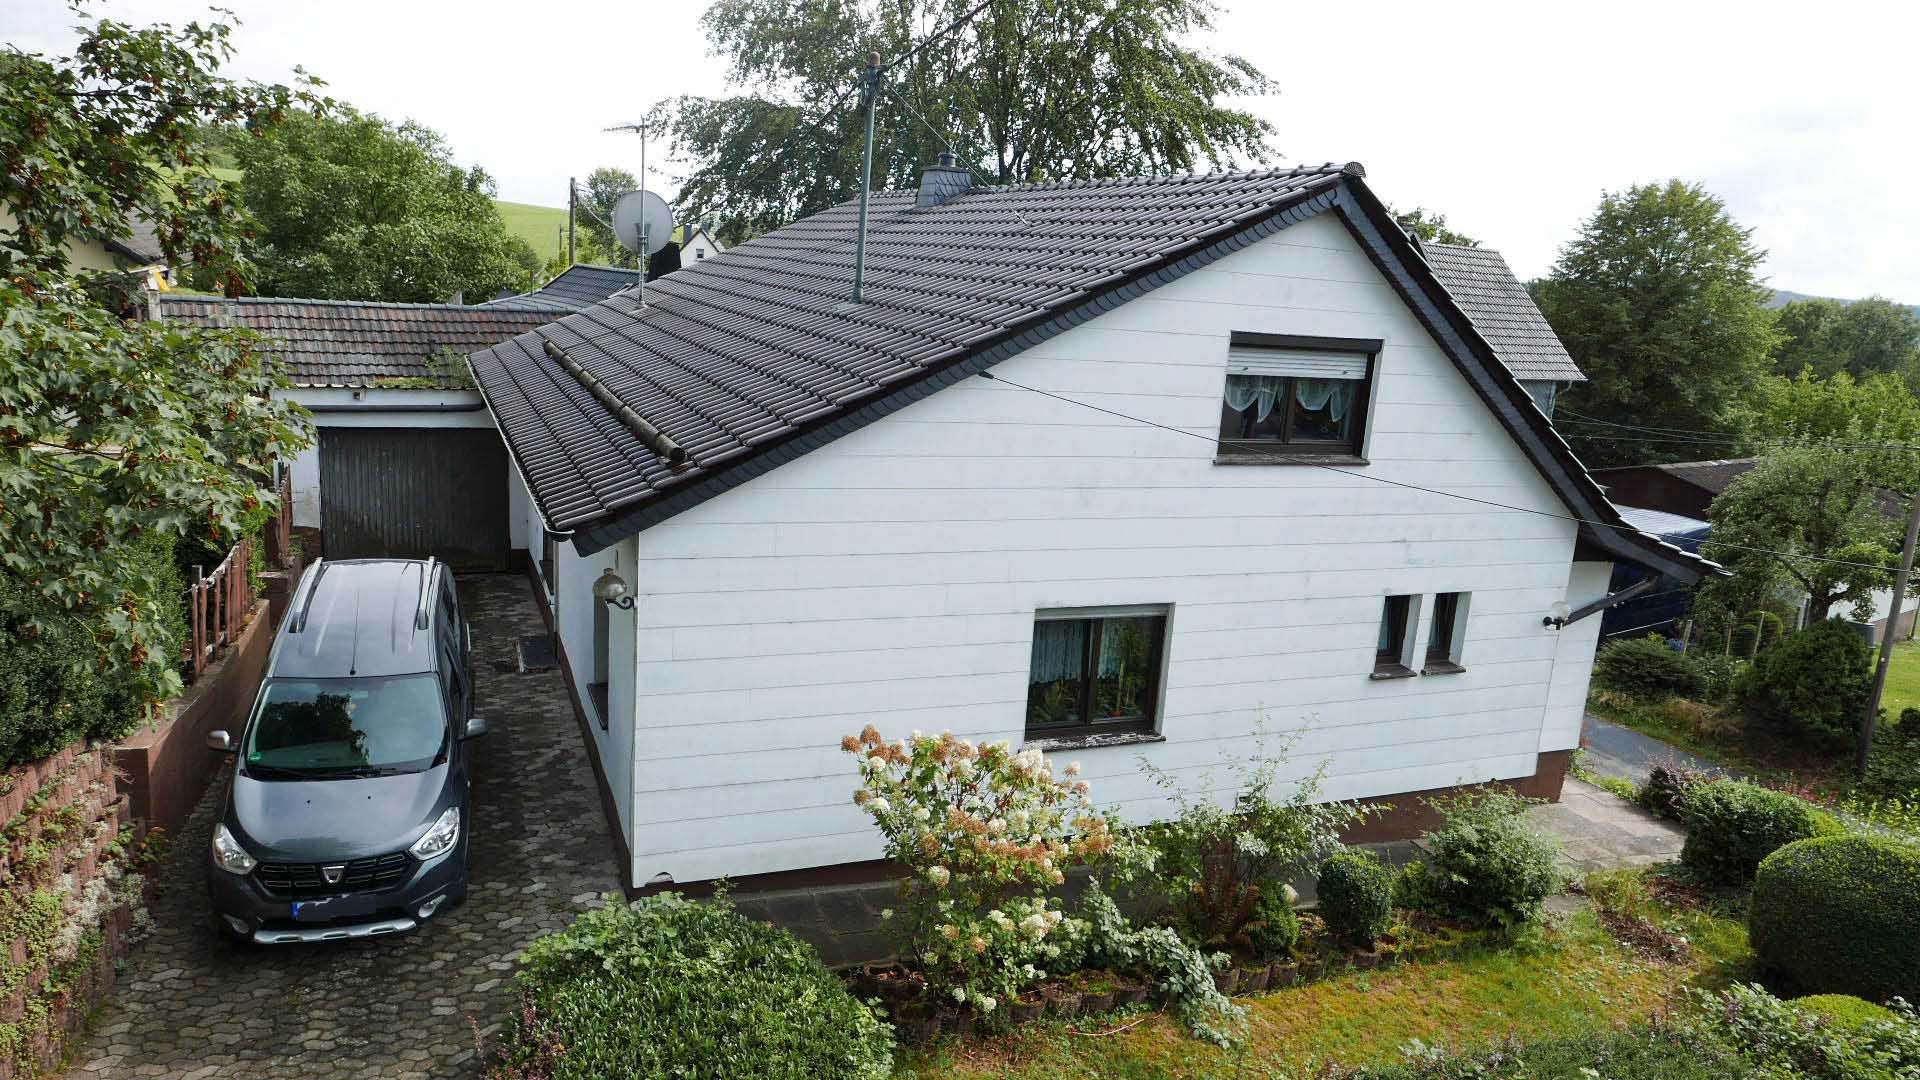 Verkauft: Einfamilienhaus mit Garage, Garage hinter dem Haus. Dach 1999 erneuert